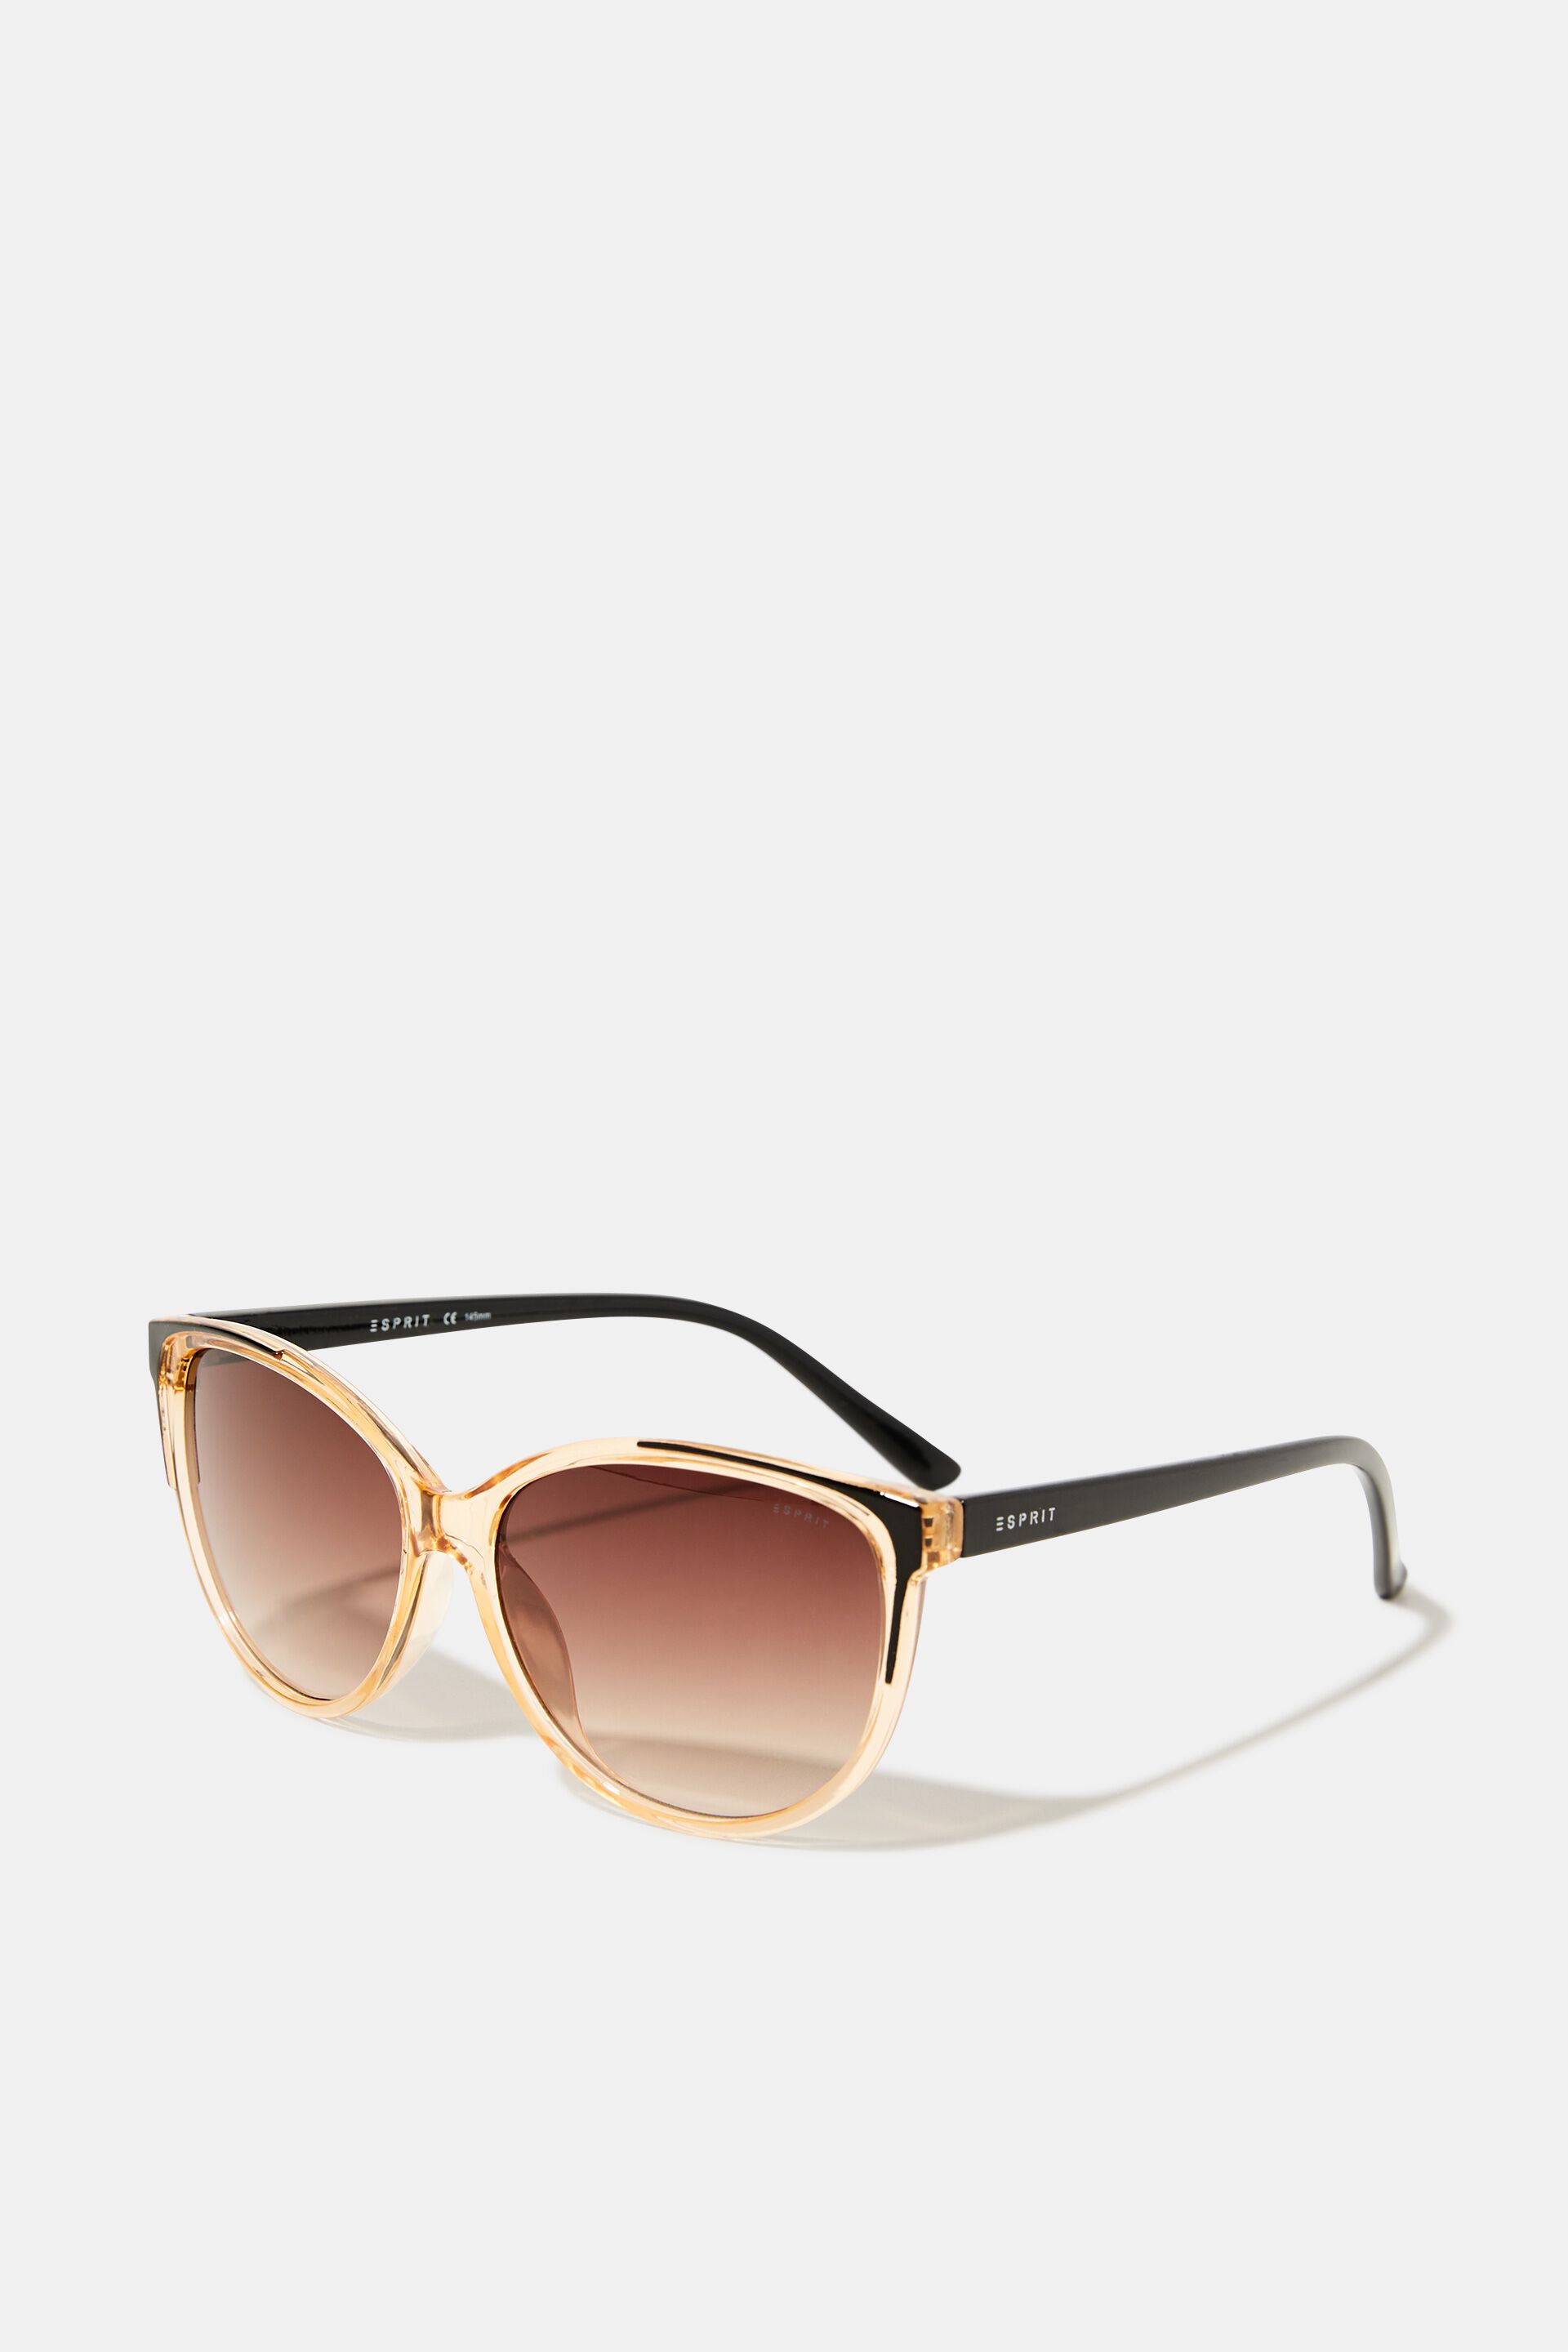 Esprit transparent with Sunglasses frame